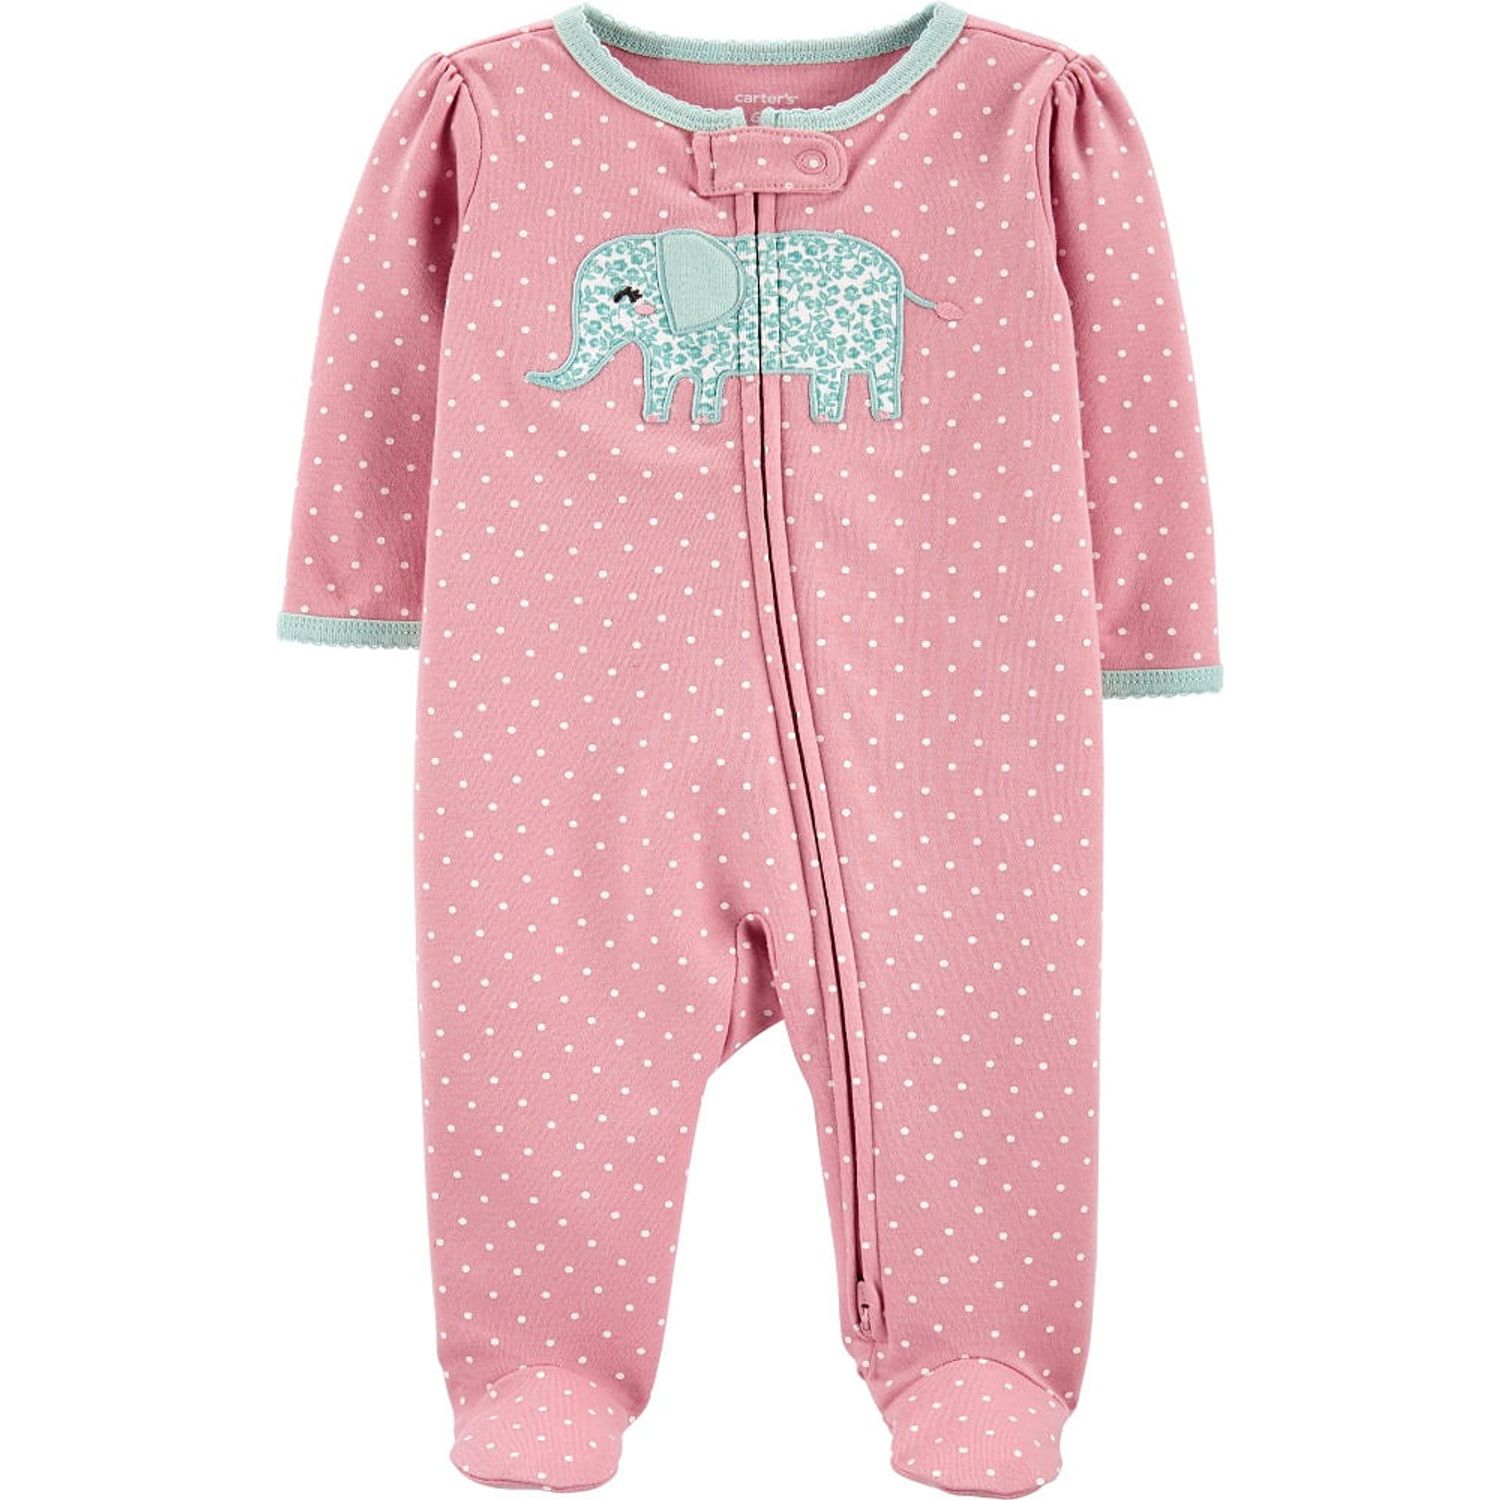 Pijama Carters Elefante con para Bebés Niñas Recién Nacidas Oechsle Pasión Oechsle